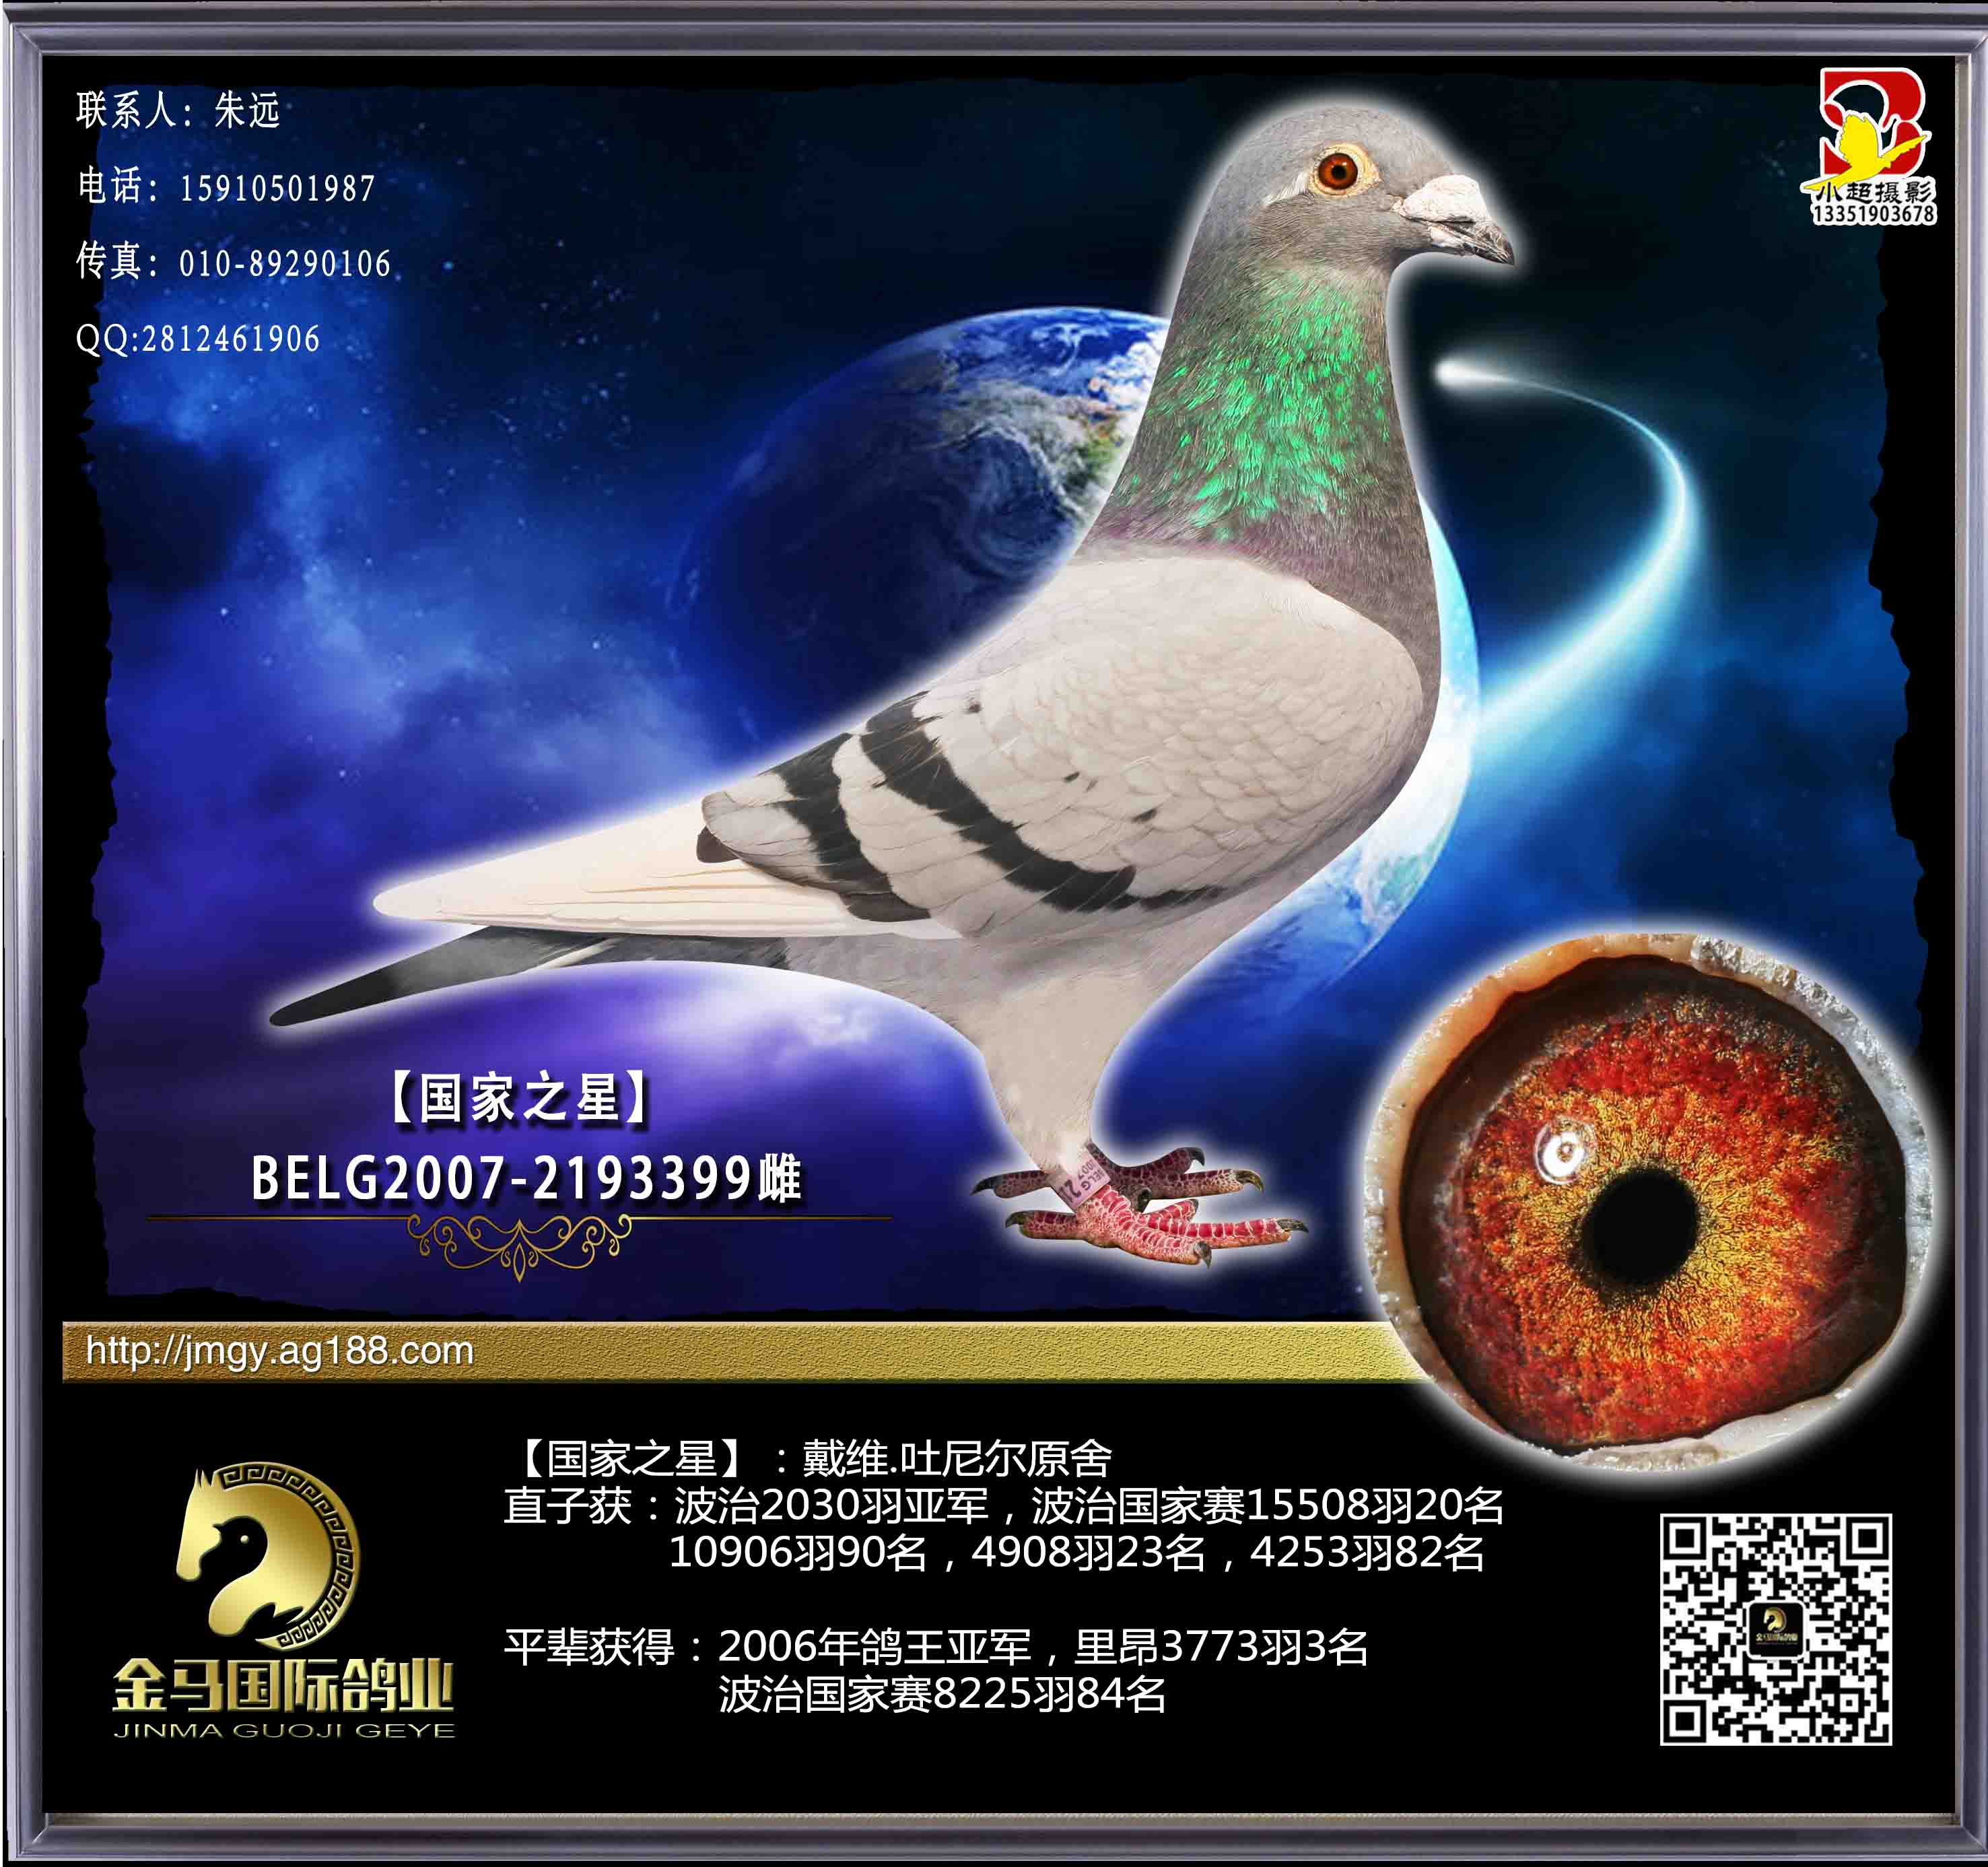 北京金马国际鸽业图片